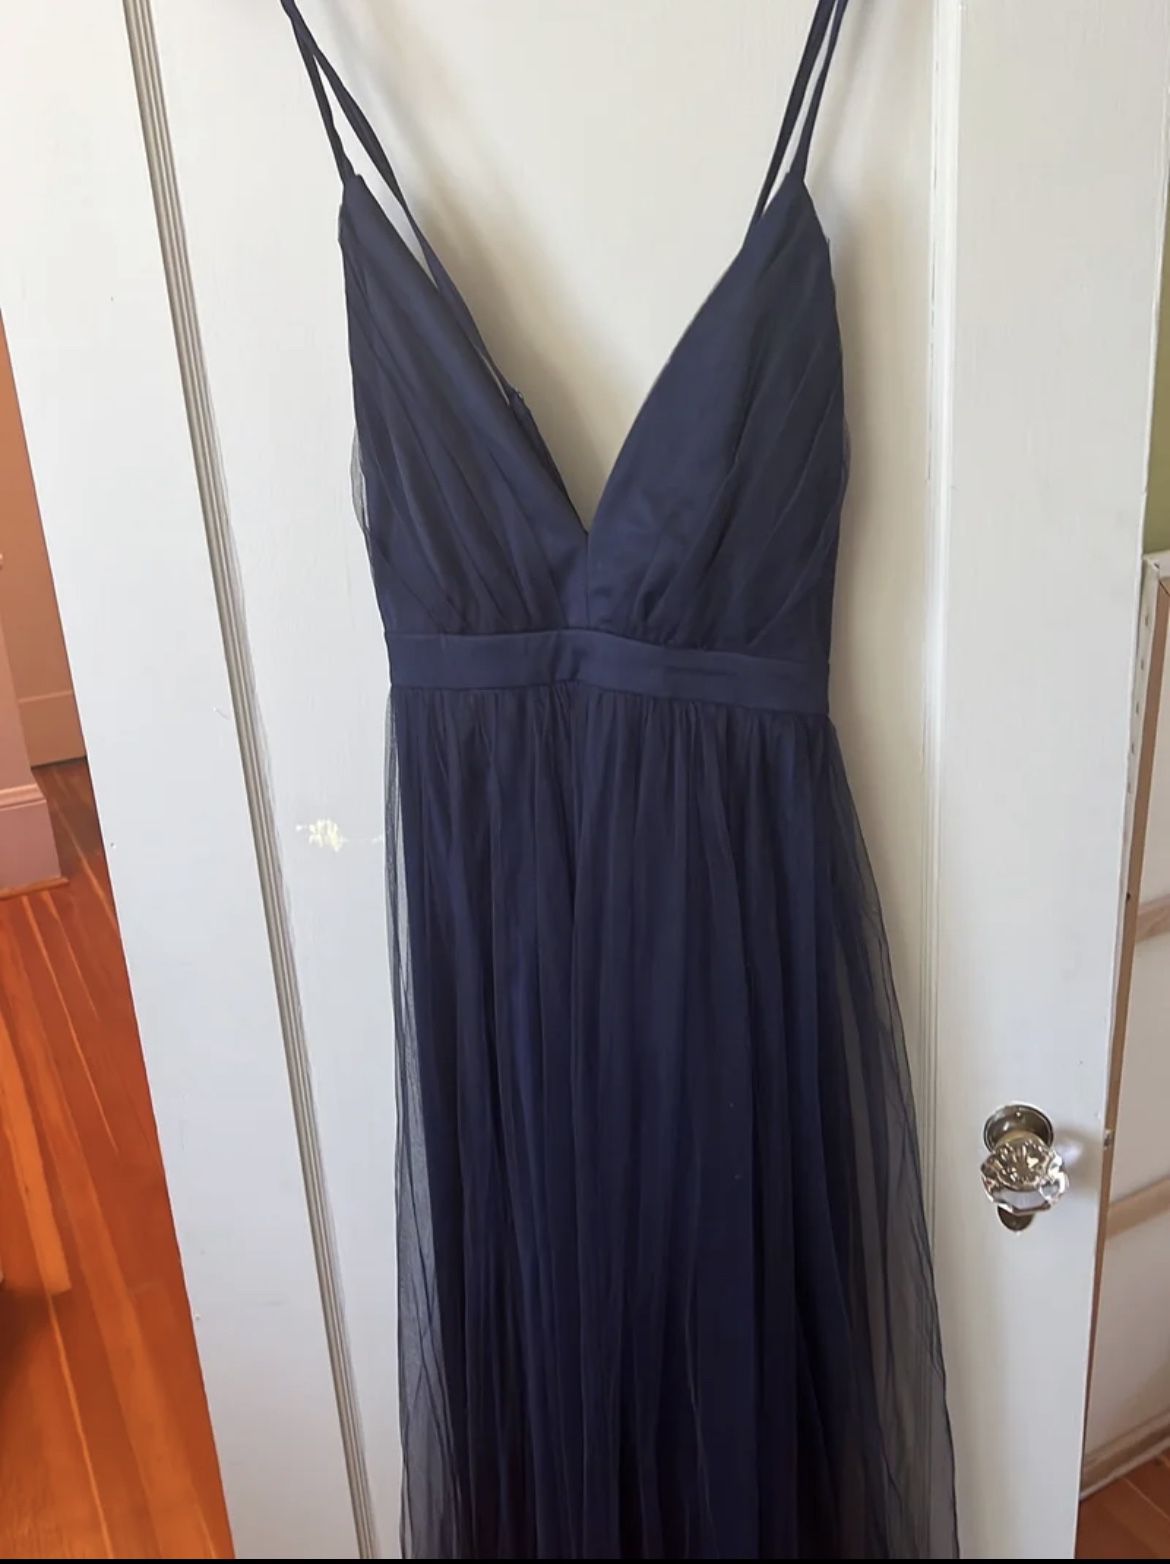 Navy Blue Maxi Dress Size XL